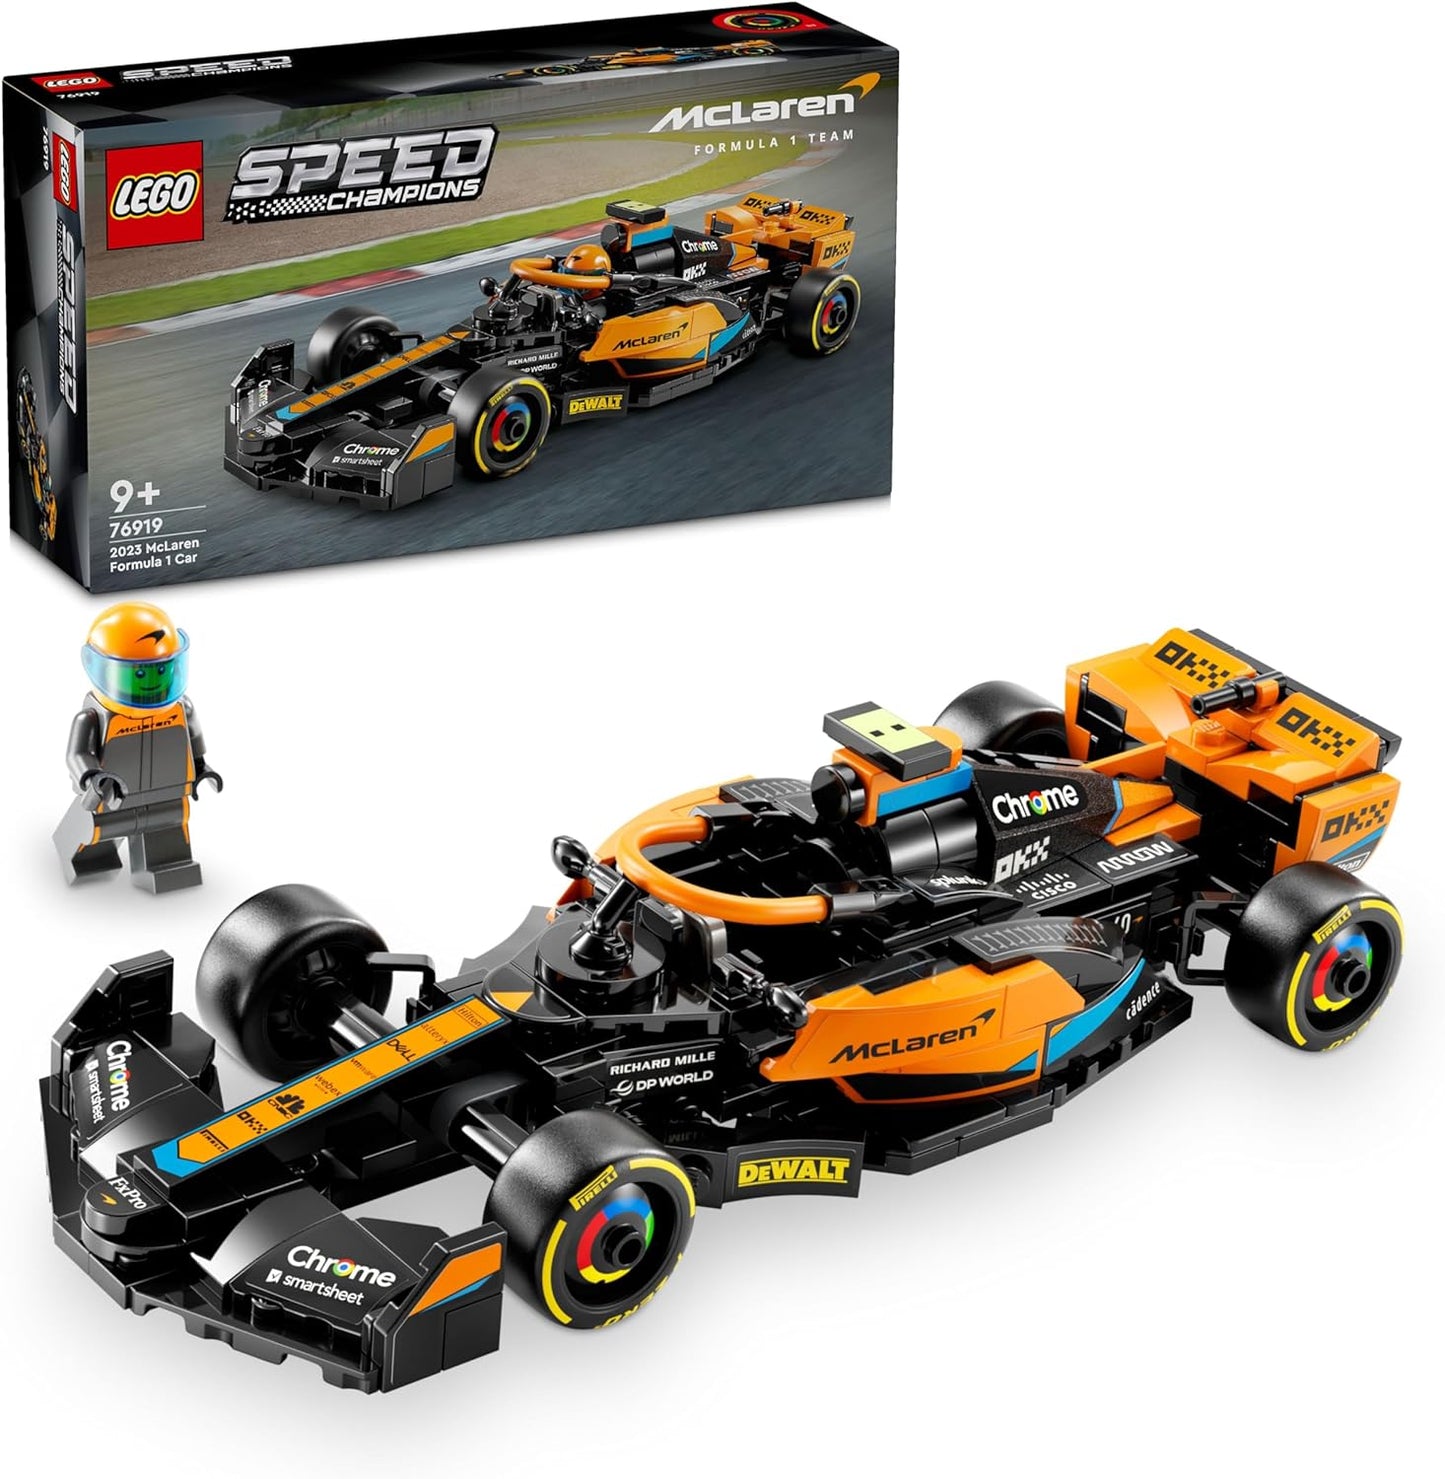 LEGO 10330 Conjunto de veículos Icons McLaren MP4/4 e Ayrton Senna, Corrida F1